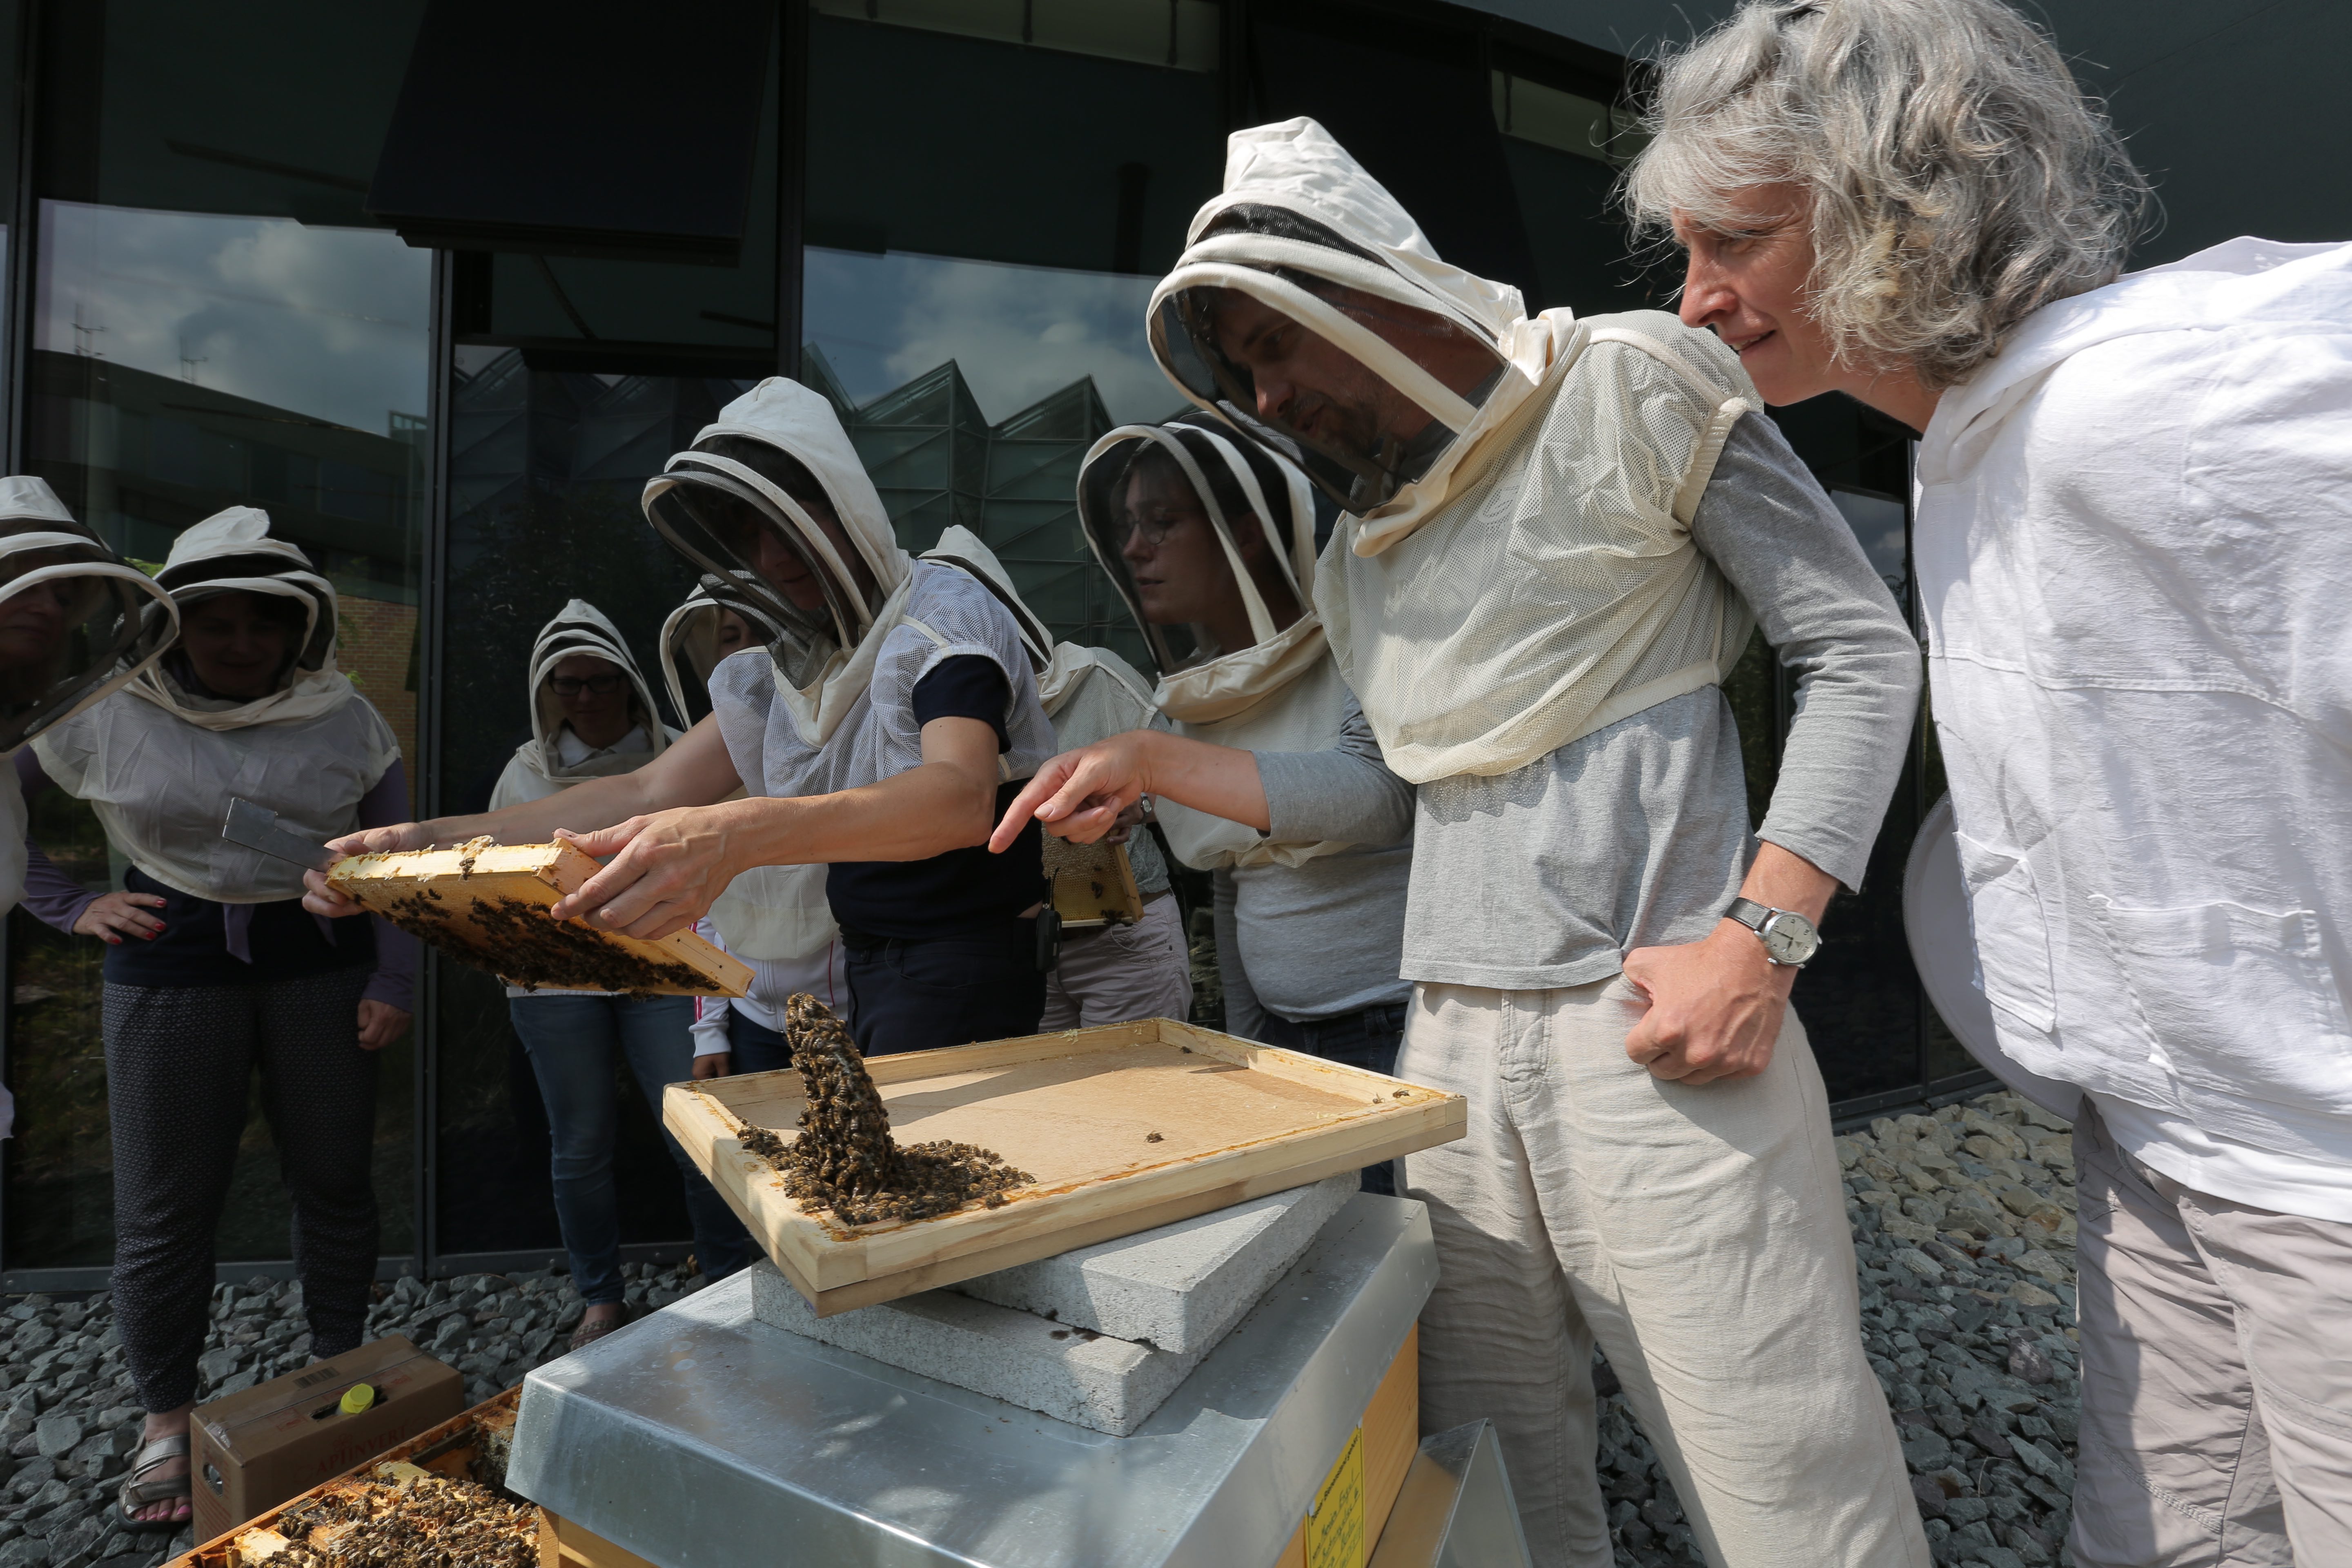 mehrere Personen mit einem Imker-Schutz für Kopf und Oberkörper sehen bei dem Öffnen eines Bienenstocks zu.